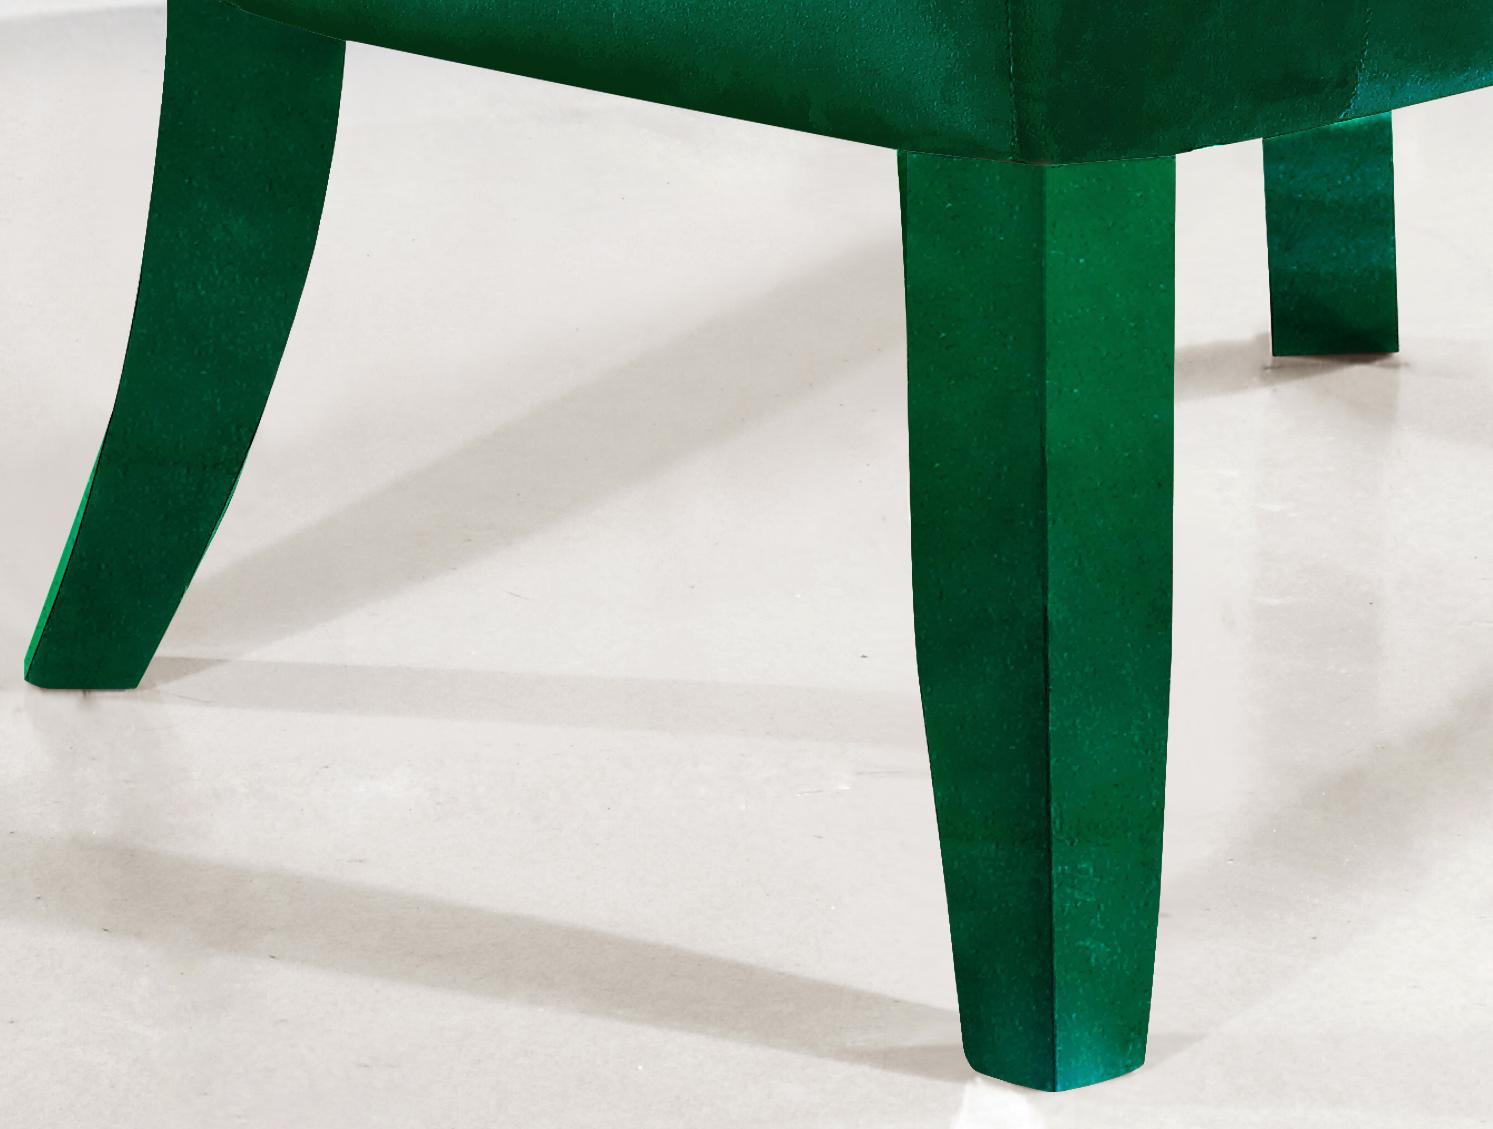 

    
Meridian Furniture Charlotte Modern Green Velvet Accent Chair (Set of 4)
